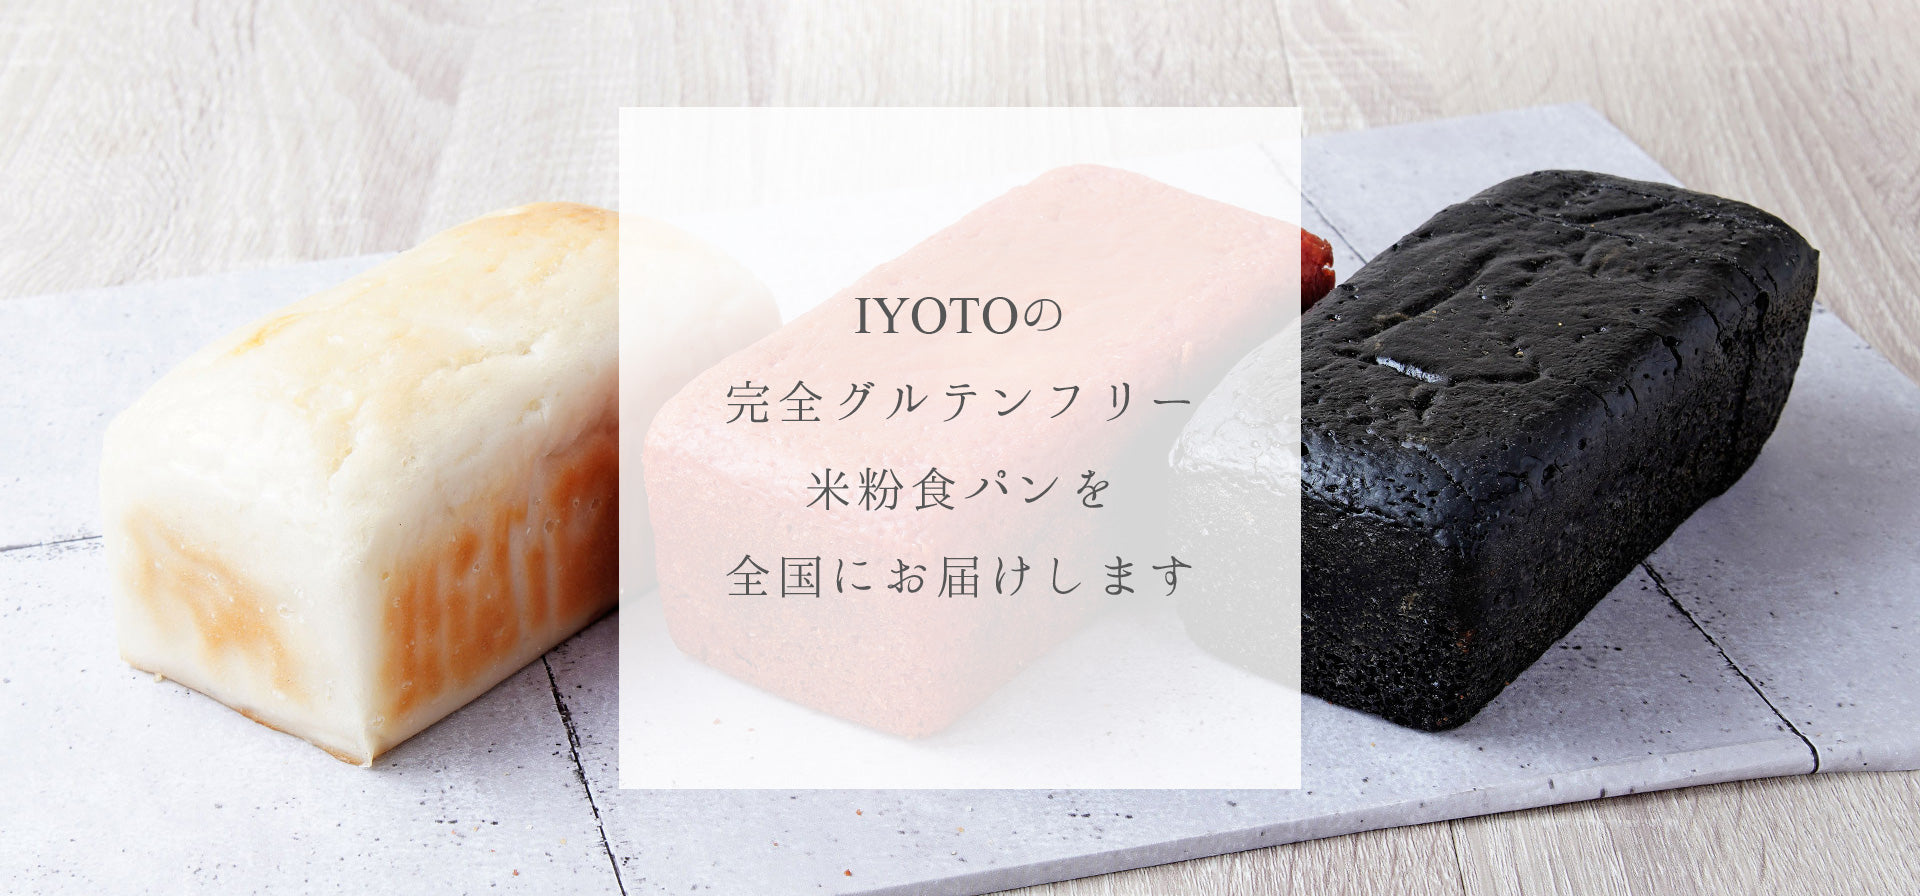 IYOTOの完全グルテンフリー米粉食パンを全国にお届けします